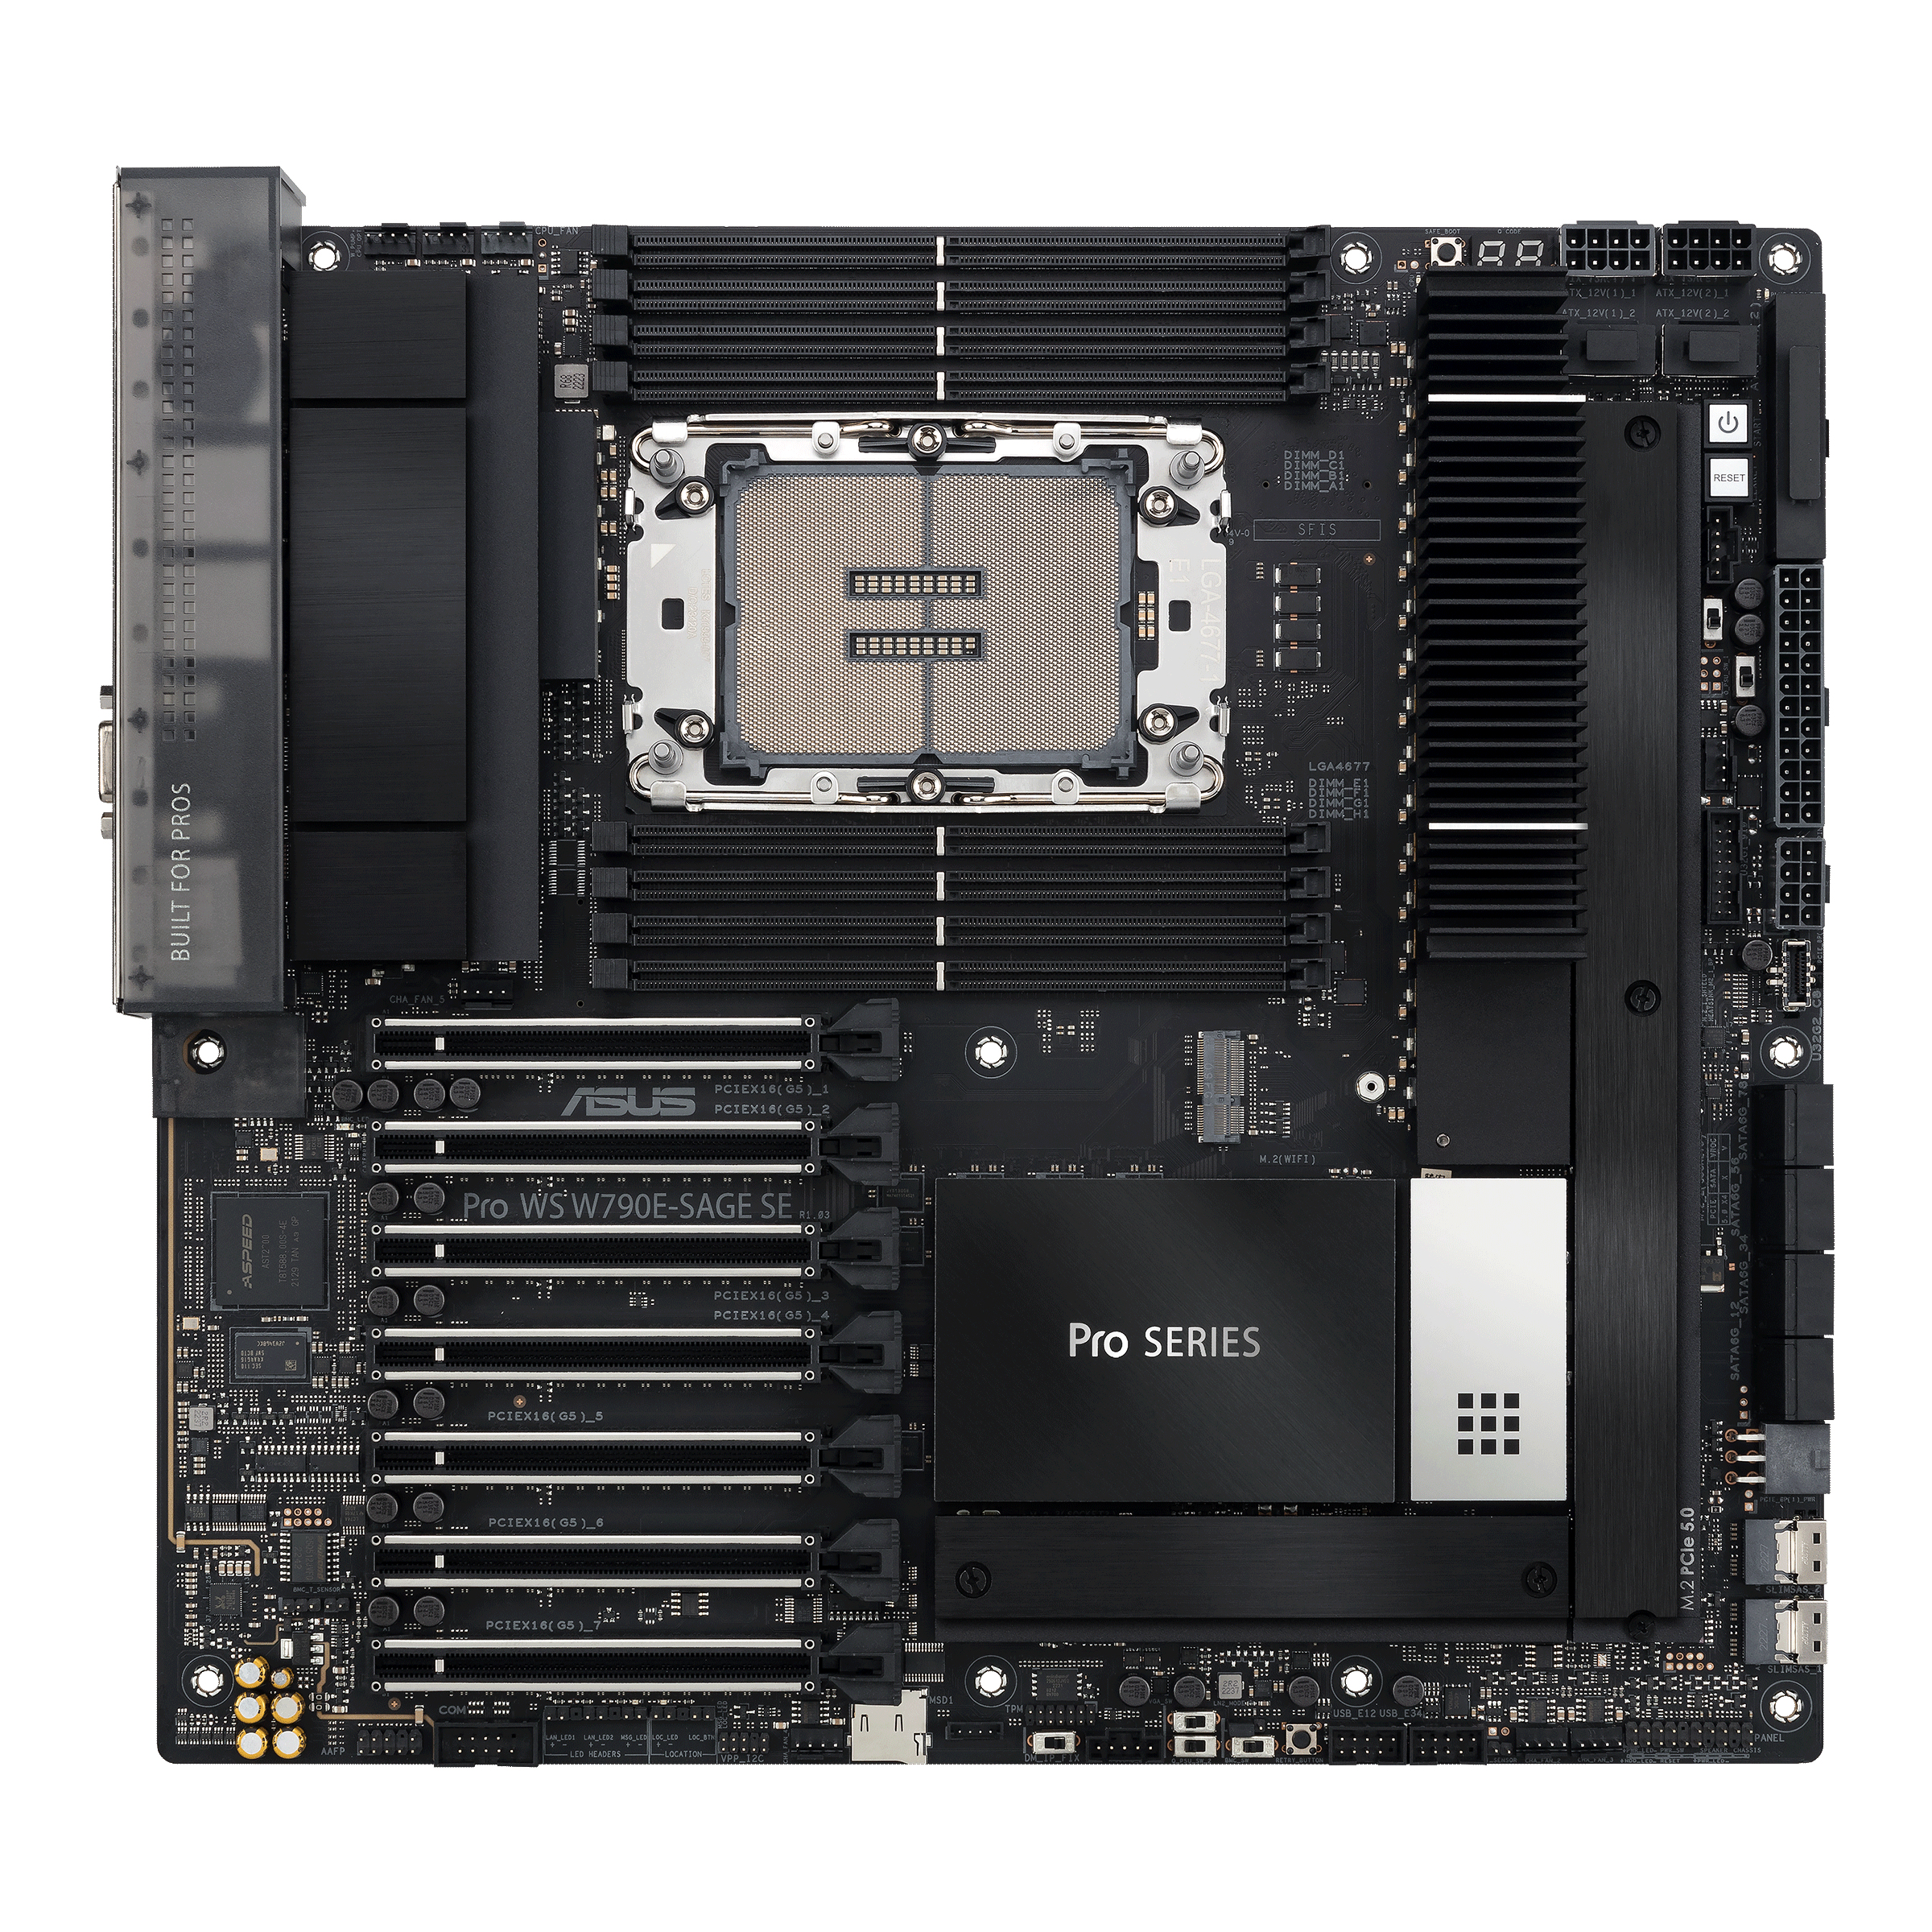 MB ASUS Workstation LGA4677 Pro WS W790E-SAGE SE  2x 10GB W790 Chipsatz | 1 x Intel Xeon W3400/2400 (SSI/EEB)